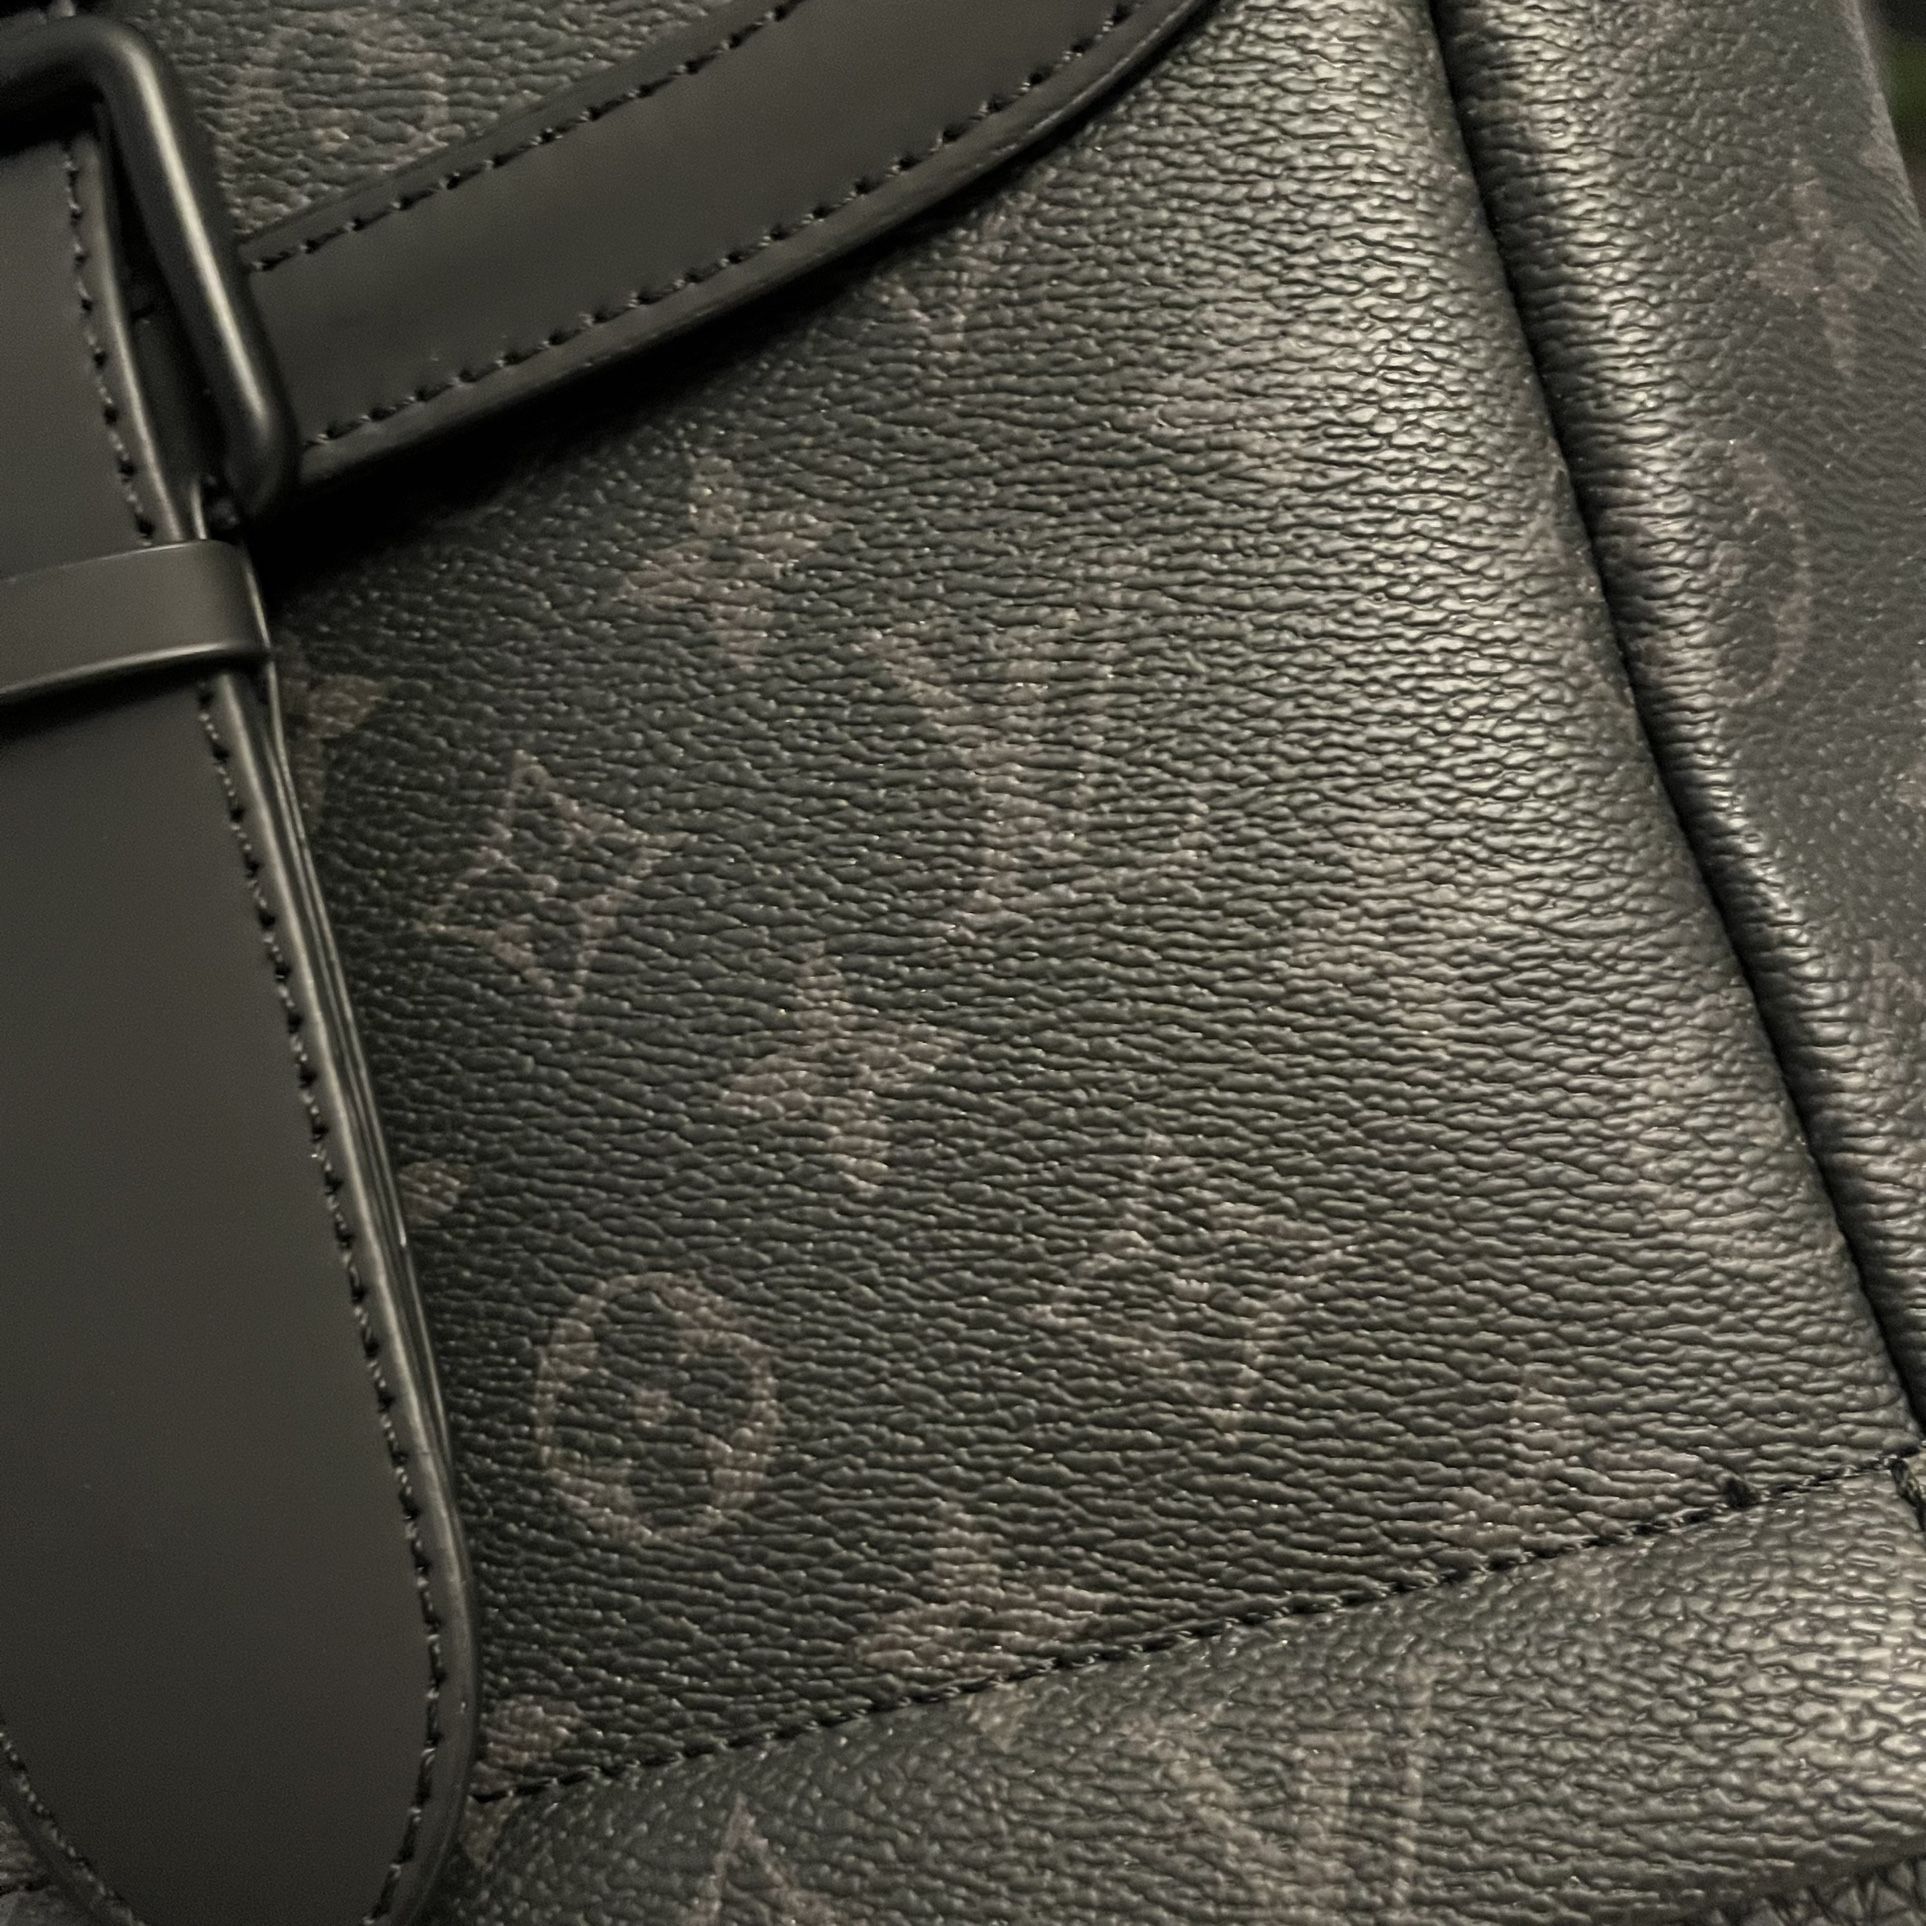 Shop Louis Vuitton MONOGRAM Saumur Backpack (M45913) by Milanoo